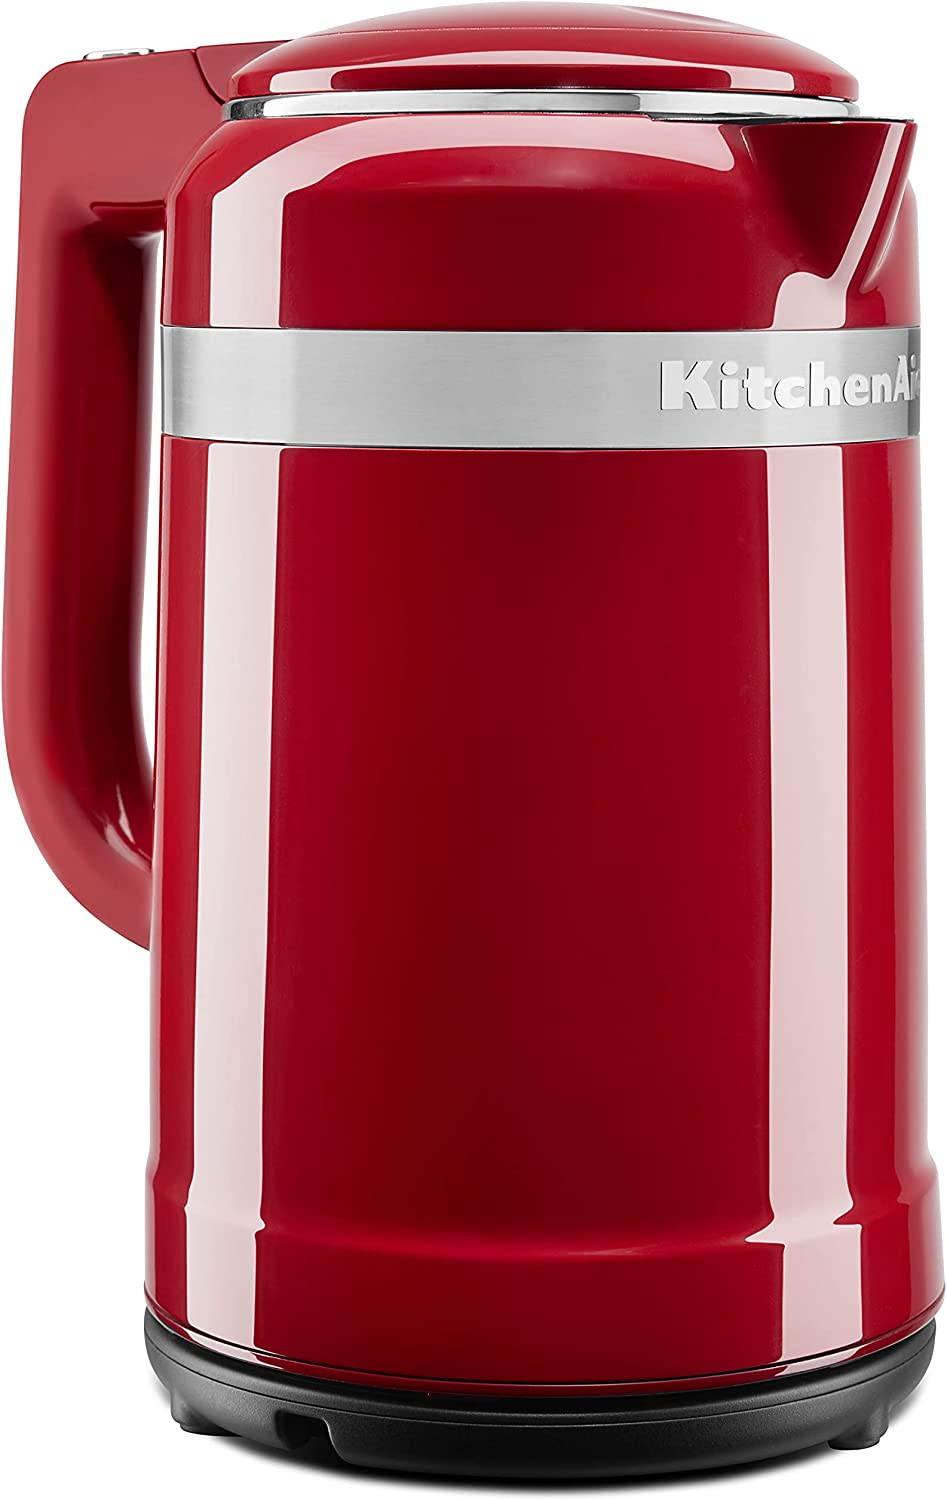 کتری برقی کیچن اید Kitchenaid Kettle Empire Red 5Kek1565Ber - ارسال ۱۰ الی ۱۵ روز کاری